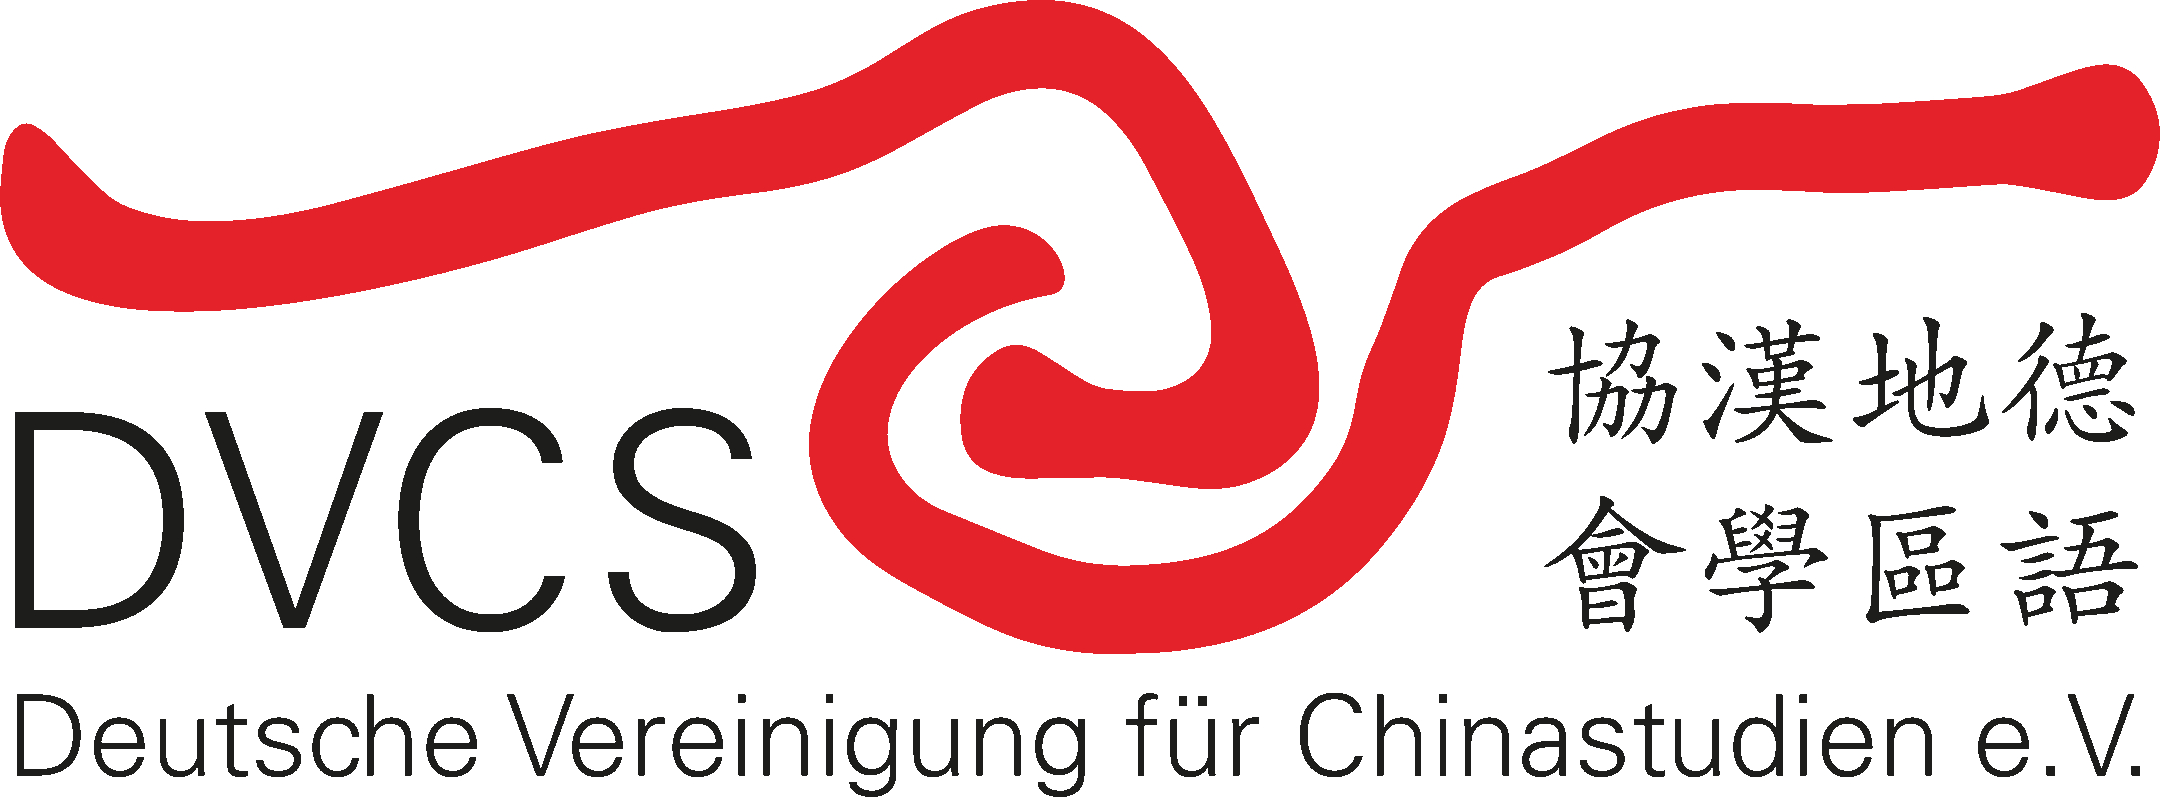 Deutsche Vereinigung für Chinastudien 德語地區漢學協會